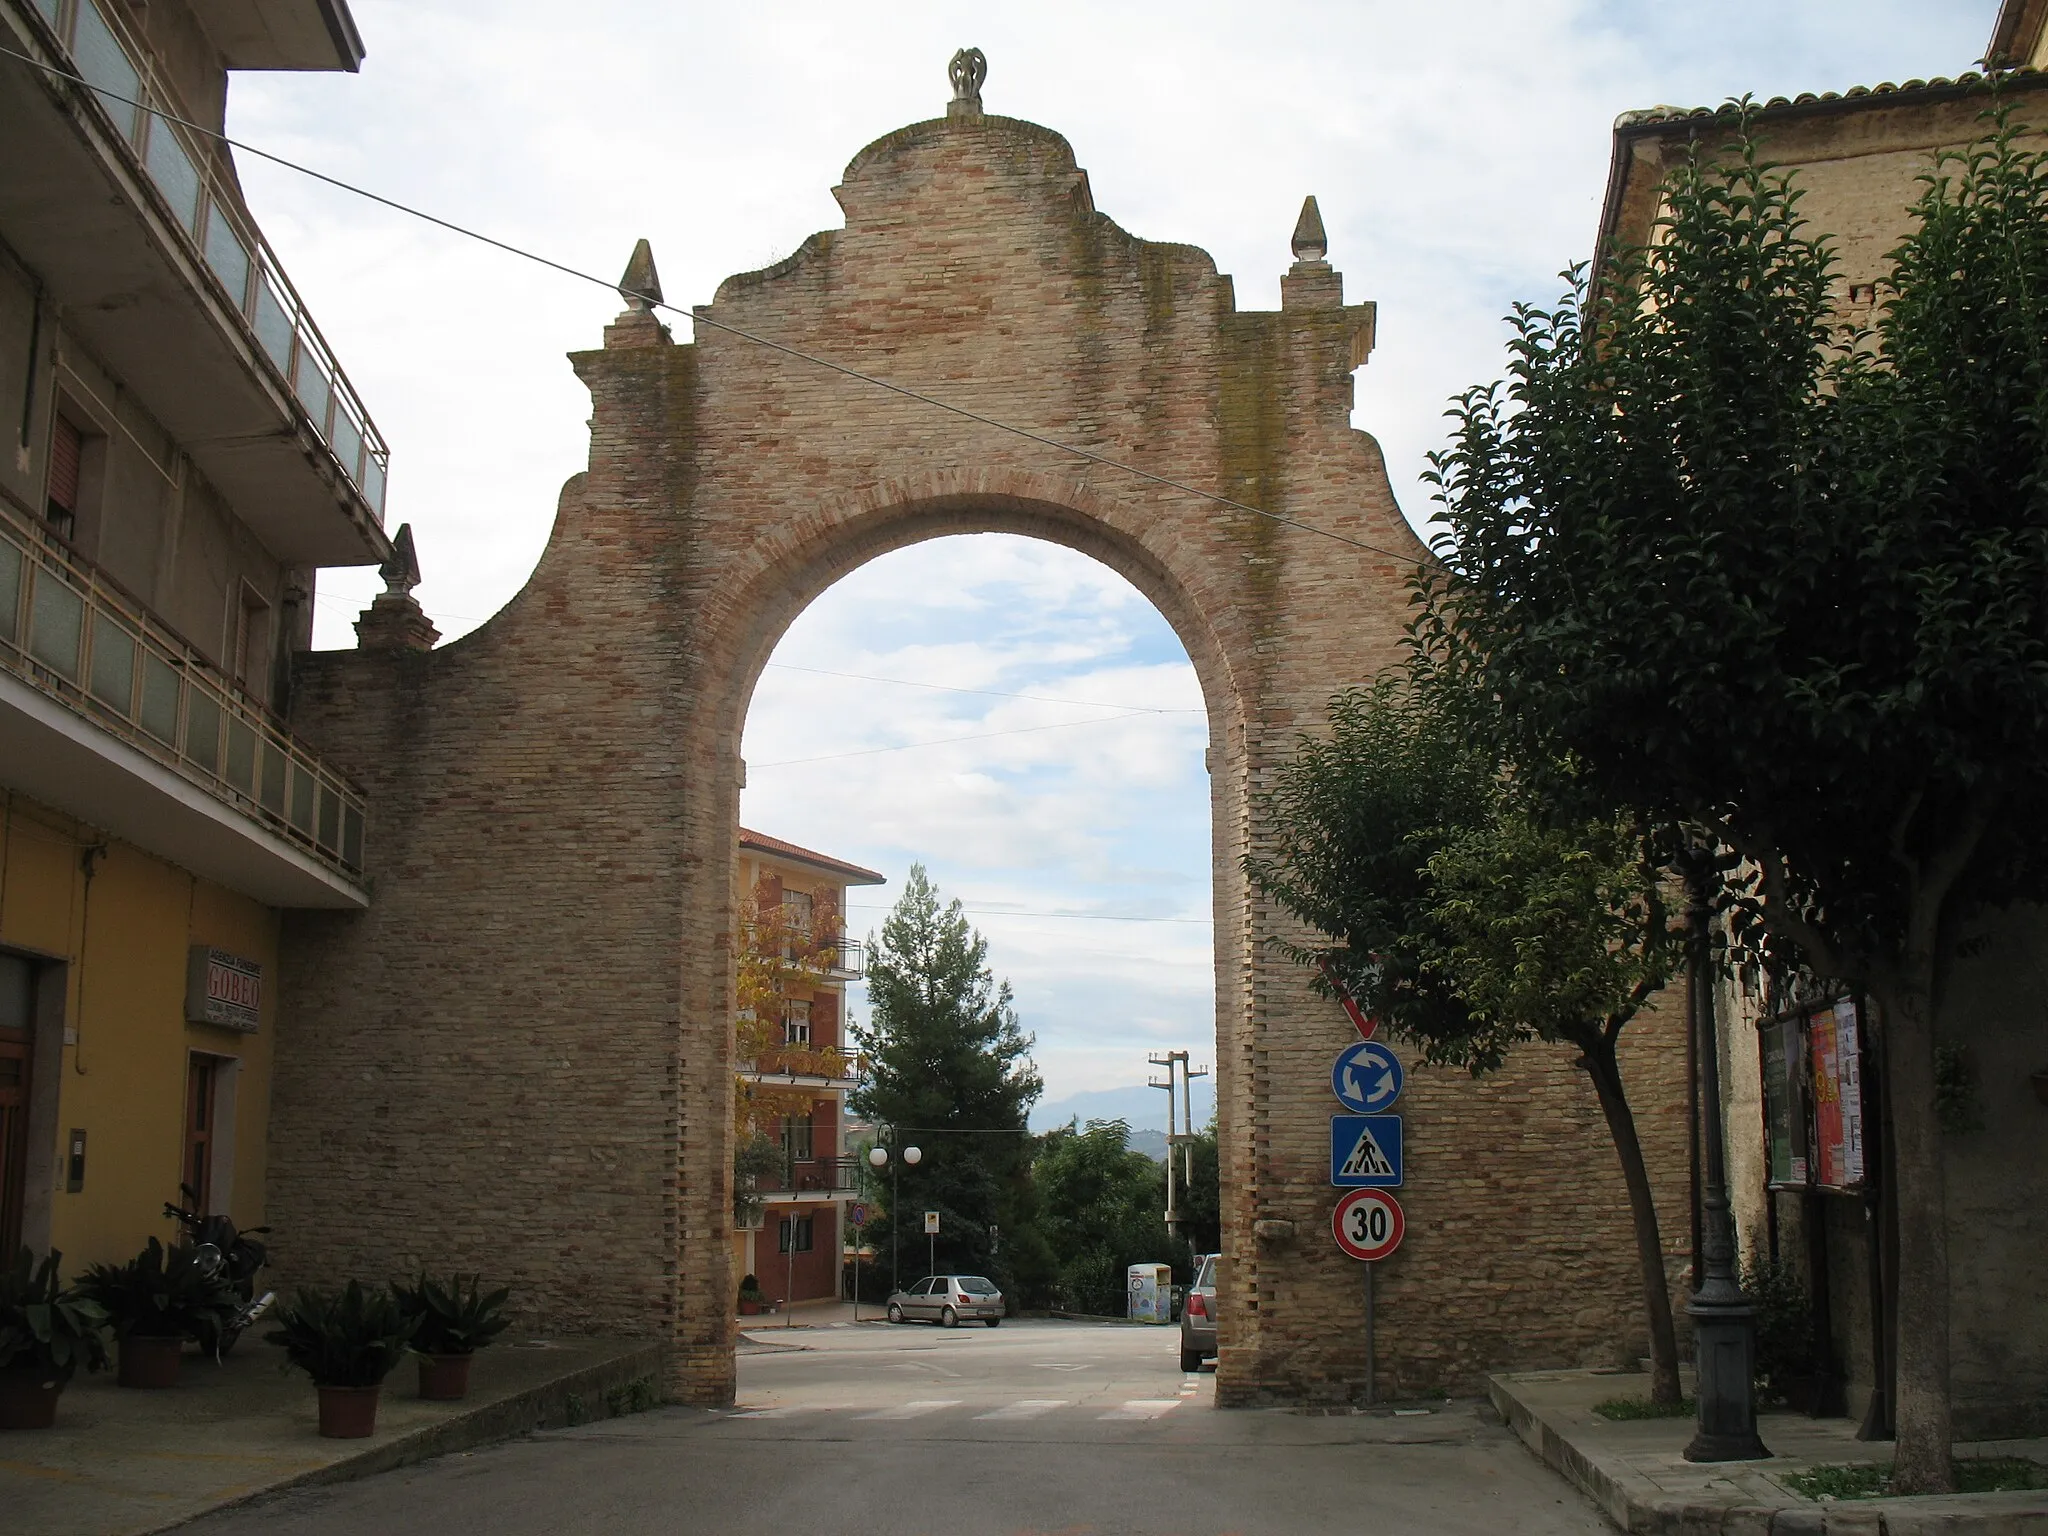 Photo showing: Questo rappresentava in passato uno degli unici due ingressi al centro di Villamagna, che nel Medioevo servivano a proteggere l’abitato dalle frequenti incursioni di Turchi e briganti.